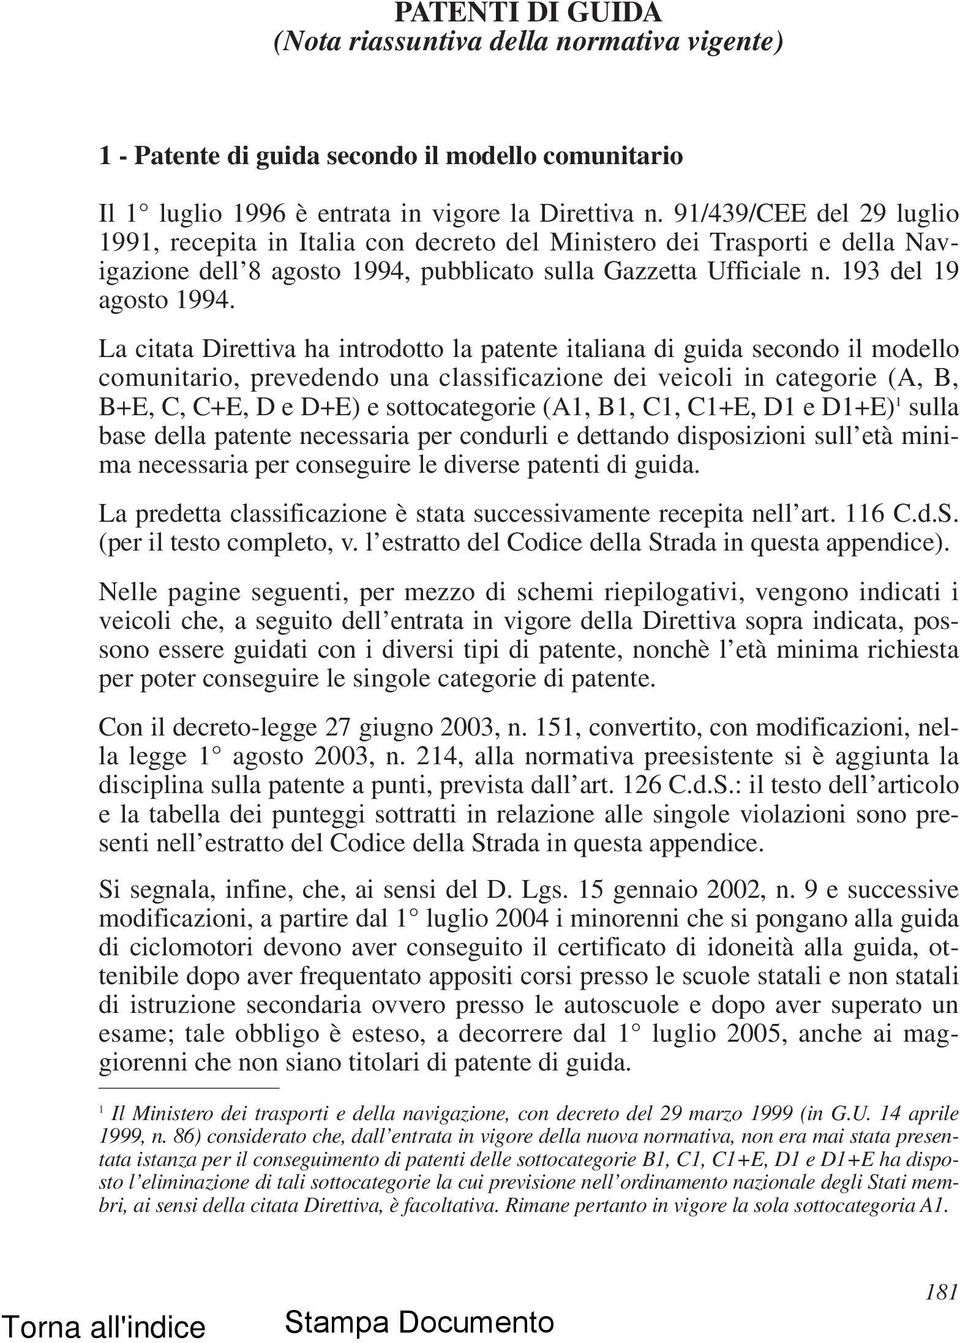 La citata Direttiva ha introdotto la patente italiana di guida secondo il modello comunitario, prevedendo una classificazione dei veicoli in categorie (A, B, B+E, C, C+E, D e D+E) e sottocategorie